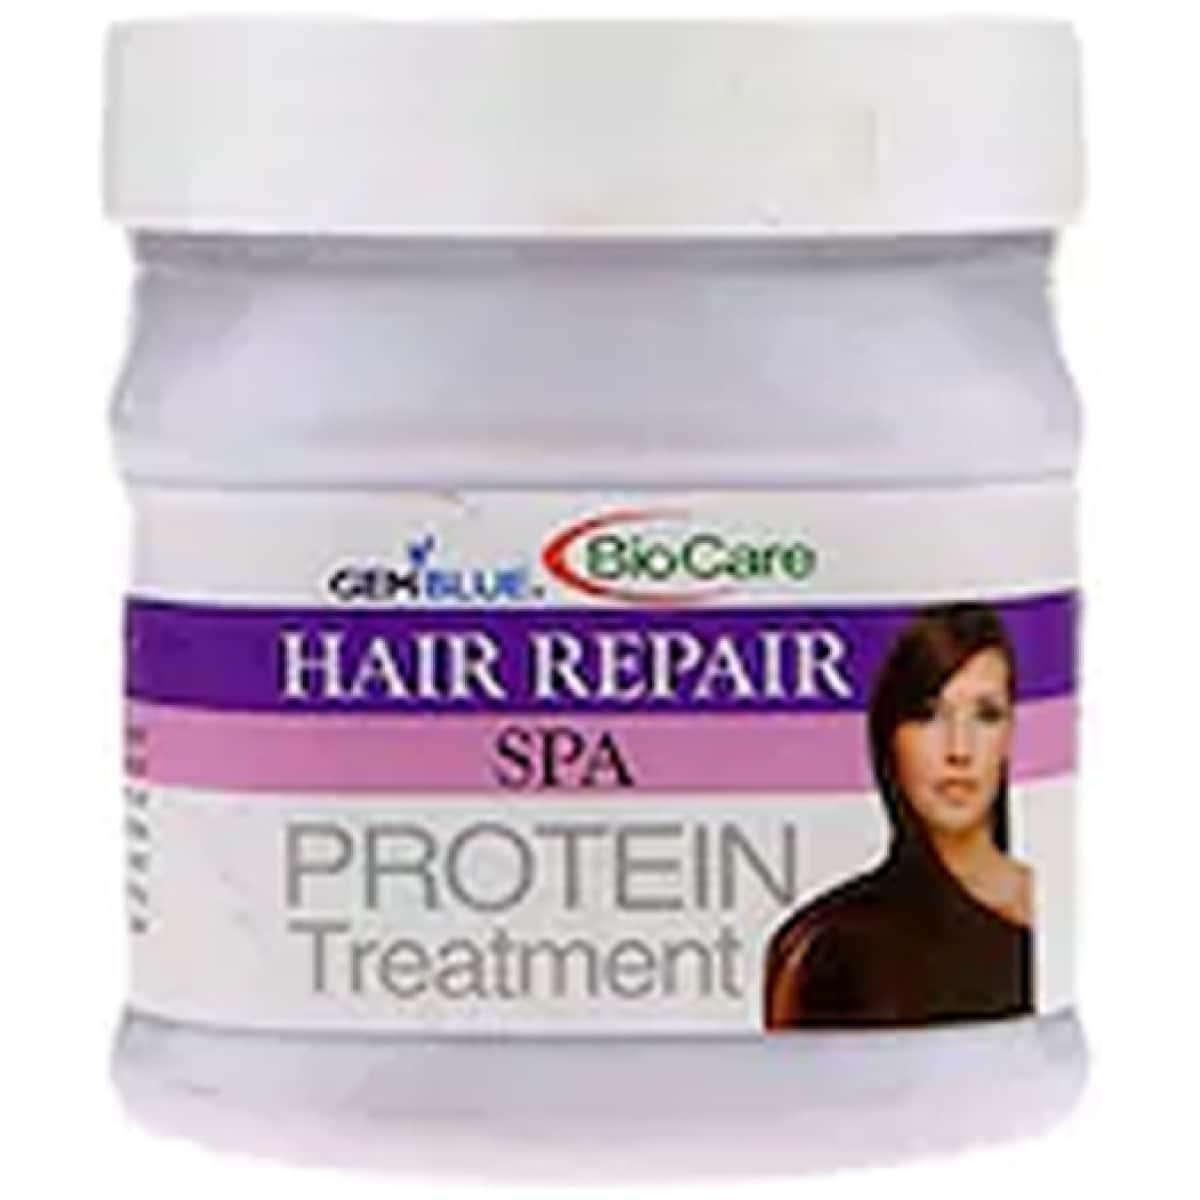 Gemblue Biocare Hair Repair Spa Protein Treatment 500Ml